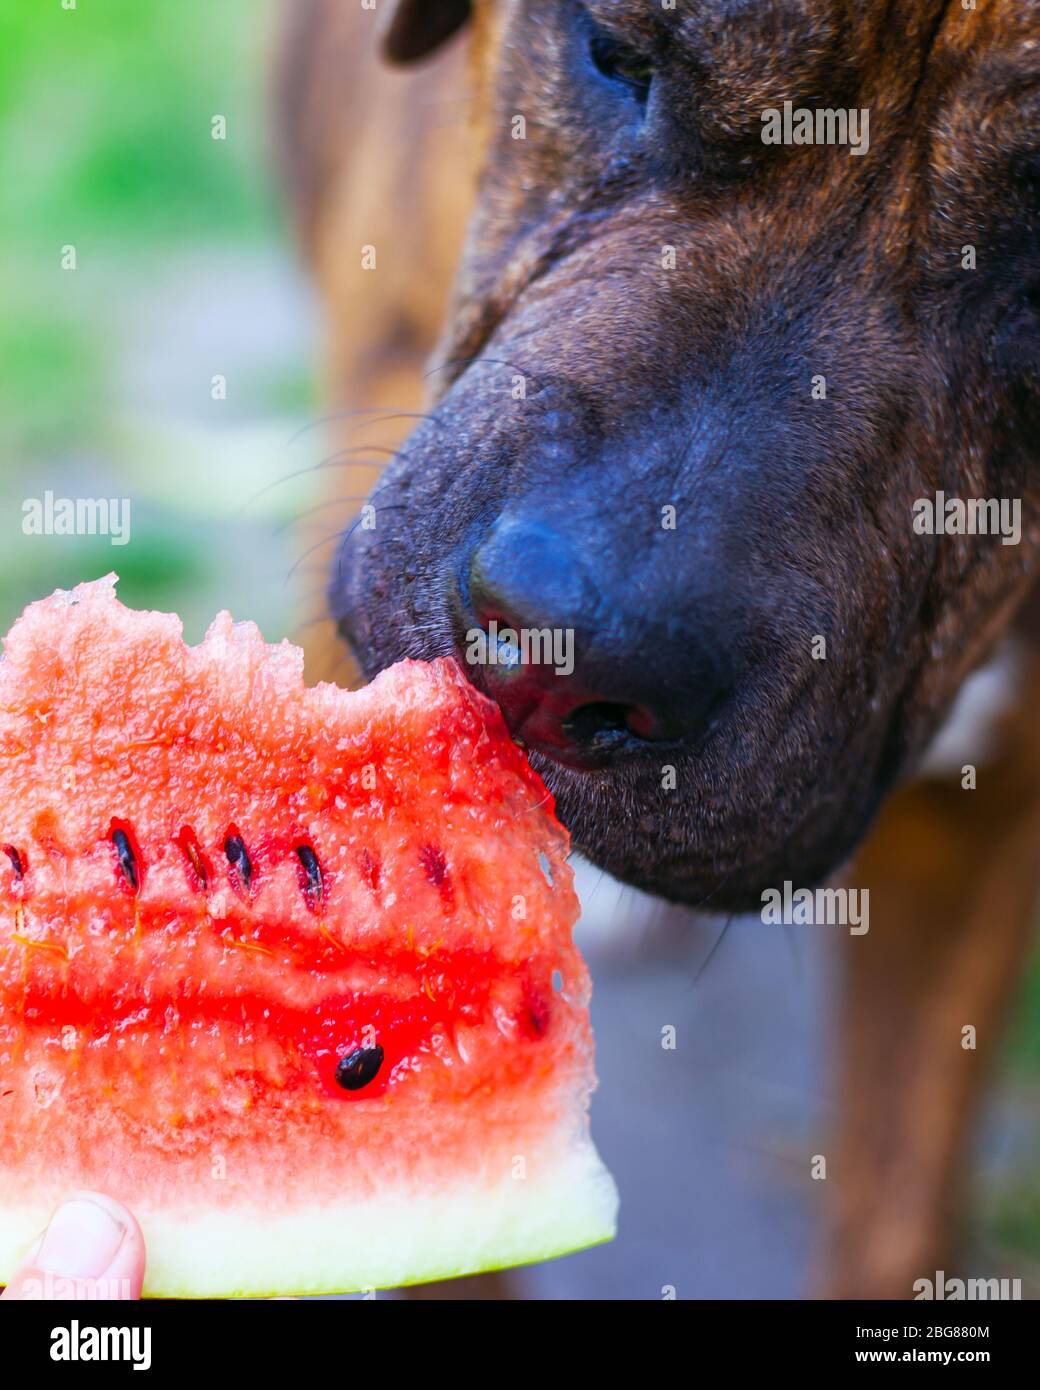 Der Hund versucht Wassermelone aus nächster Nähe zu essen. Stockfoto